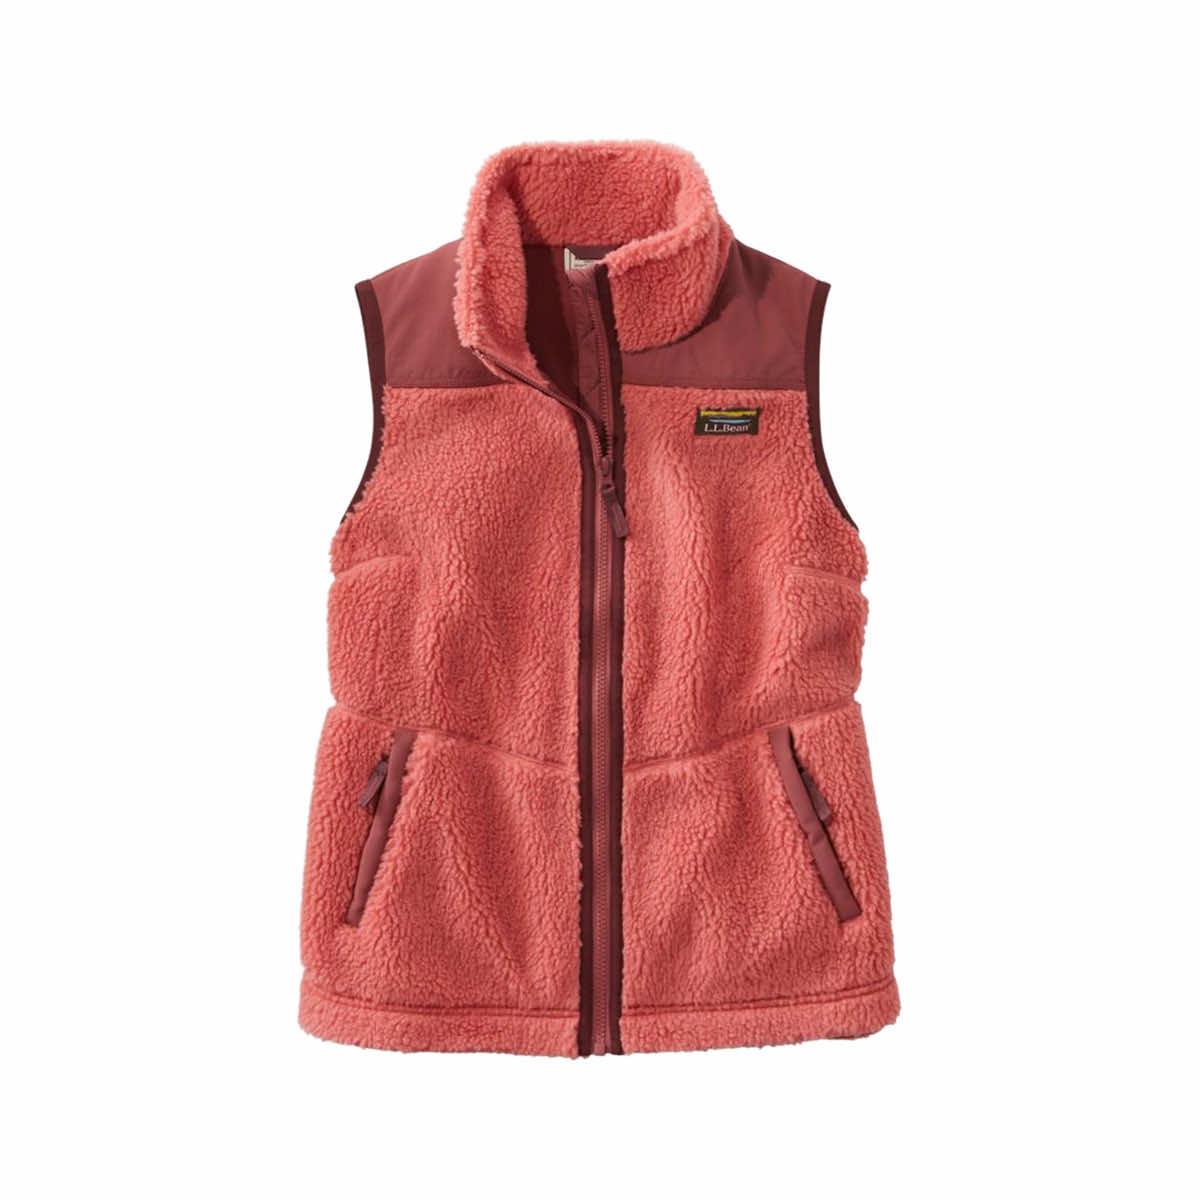 Mast General Store | Women's Bean's Sherpa Fleece Vest